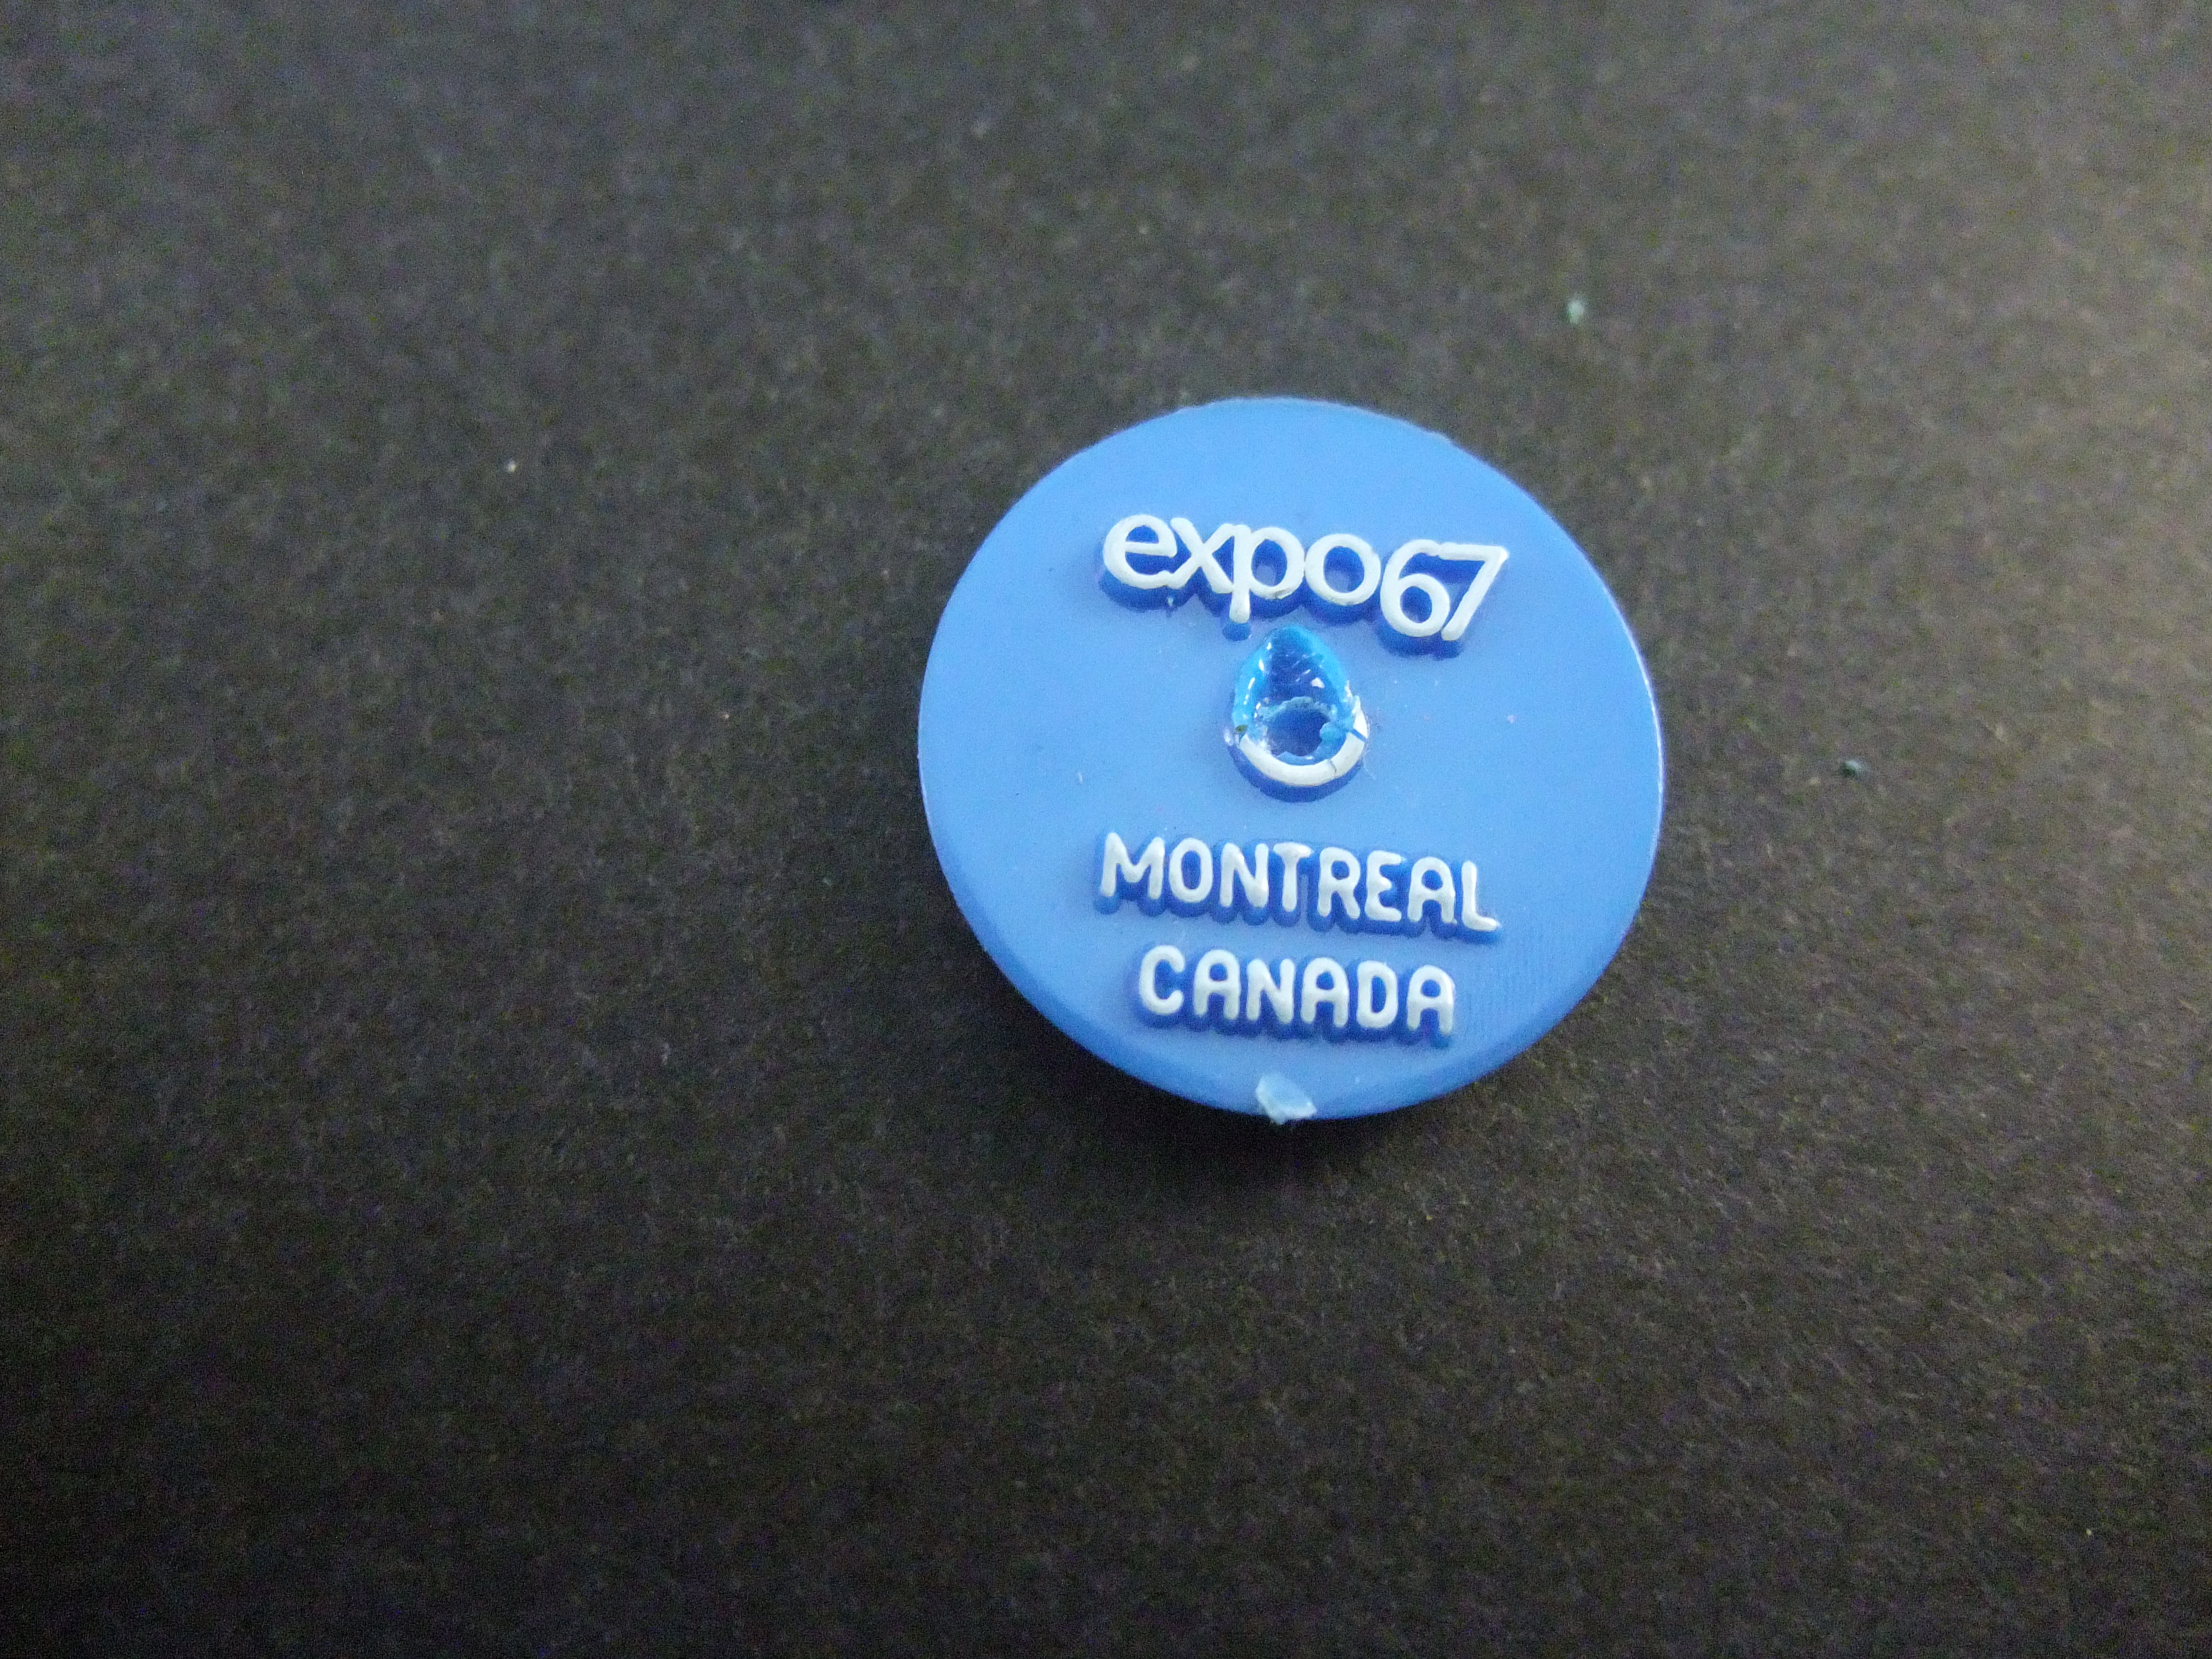 Expo 1967 Montreal Canada wereldtentoonstelling